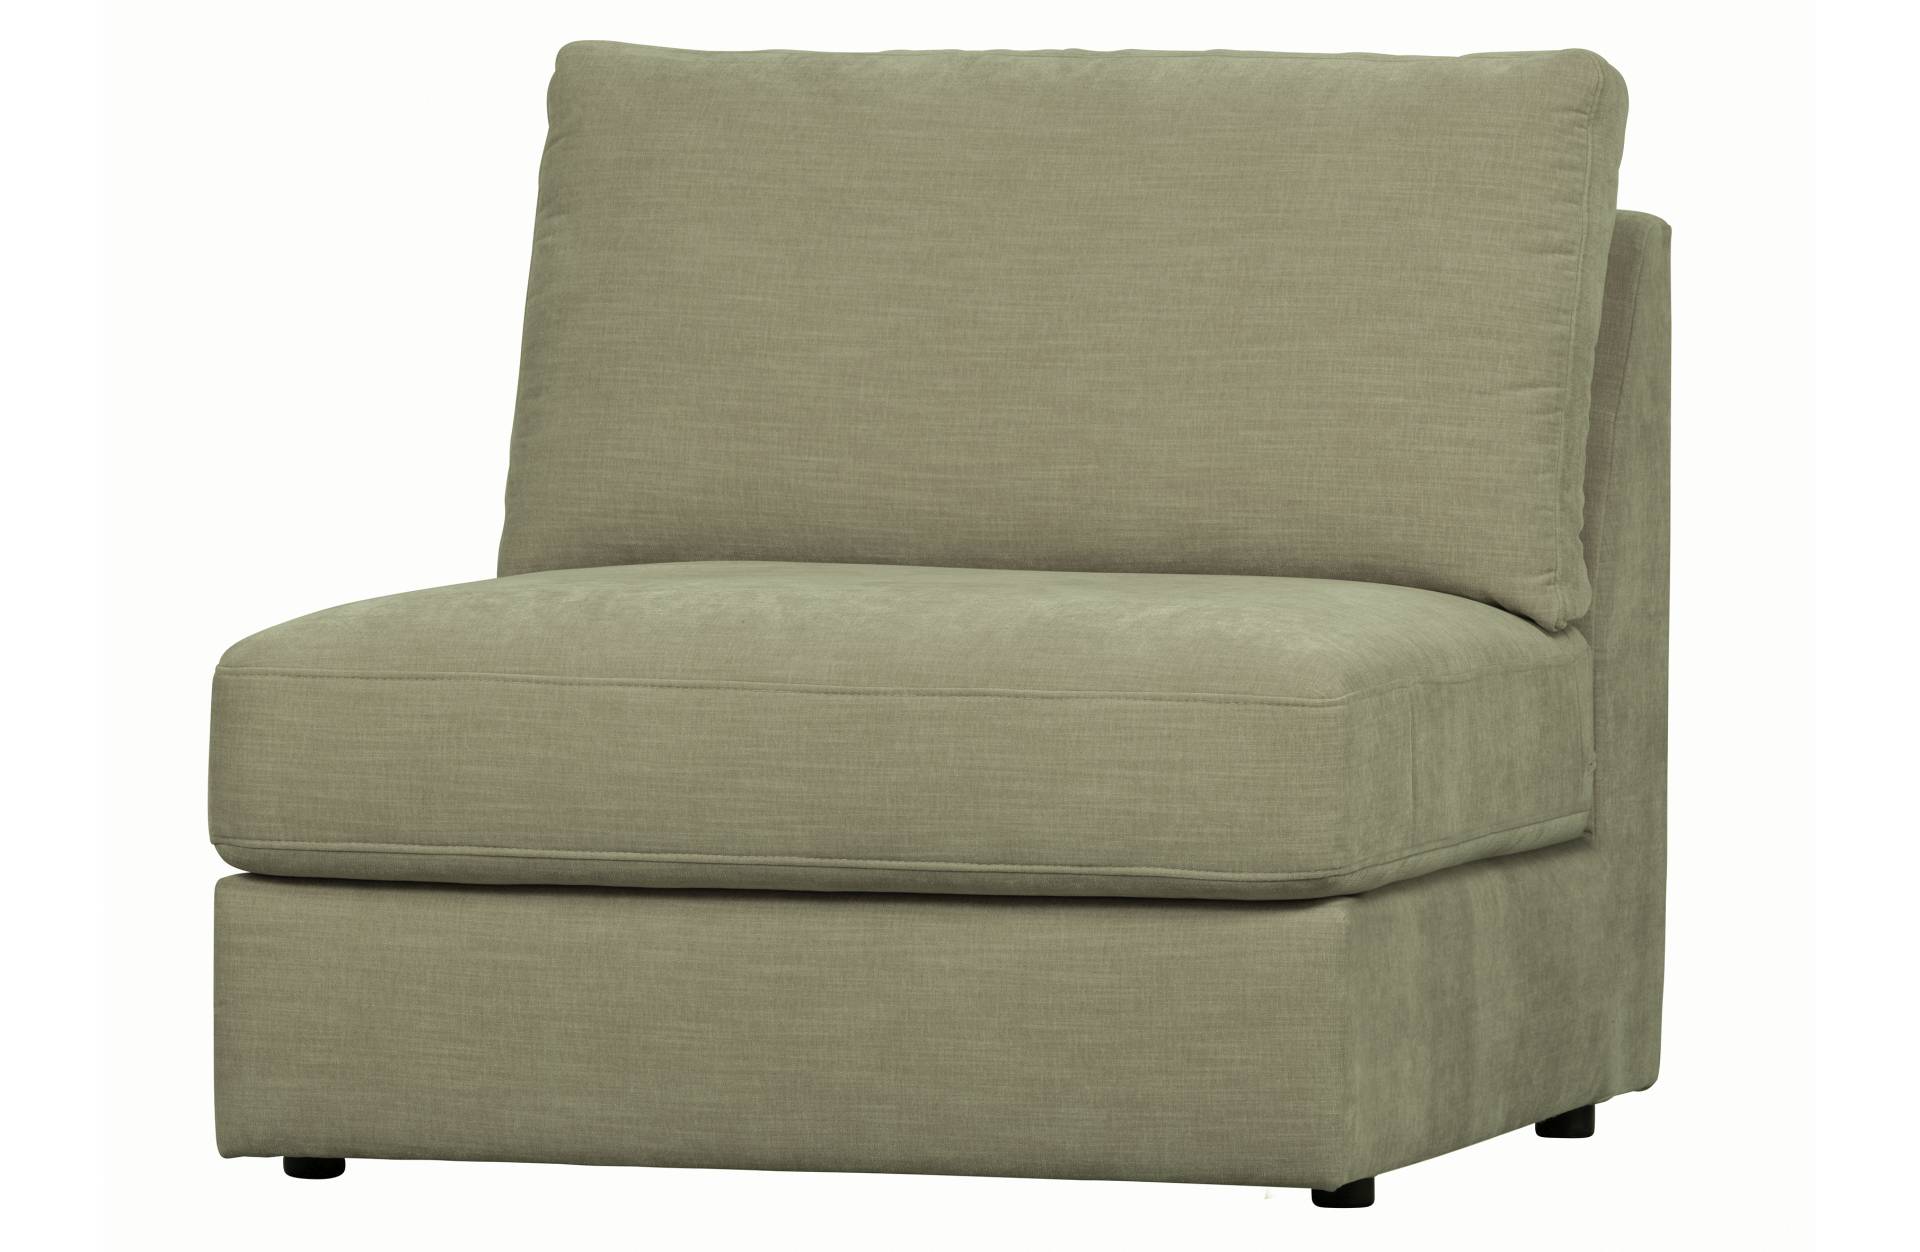 Das Modulsofa Family überzeugt mit seinem modernen Design. Das Seat Element wurde aus Gewebe-Stoff gefertigt, welcher einen einen grünen Farbton besitzen. Das Gestell ist aus Metall und hat eine schwarze Farbe. Das Element hat eine Sitzhöhe von 44 cm.